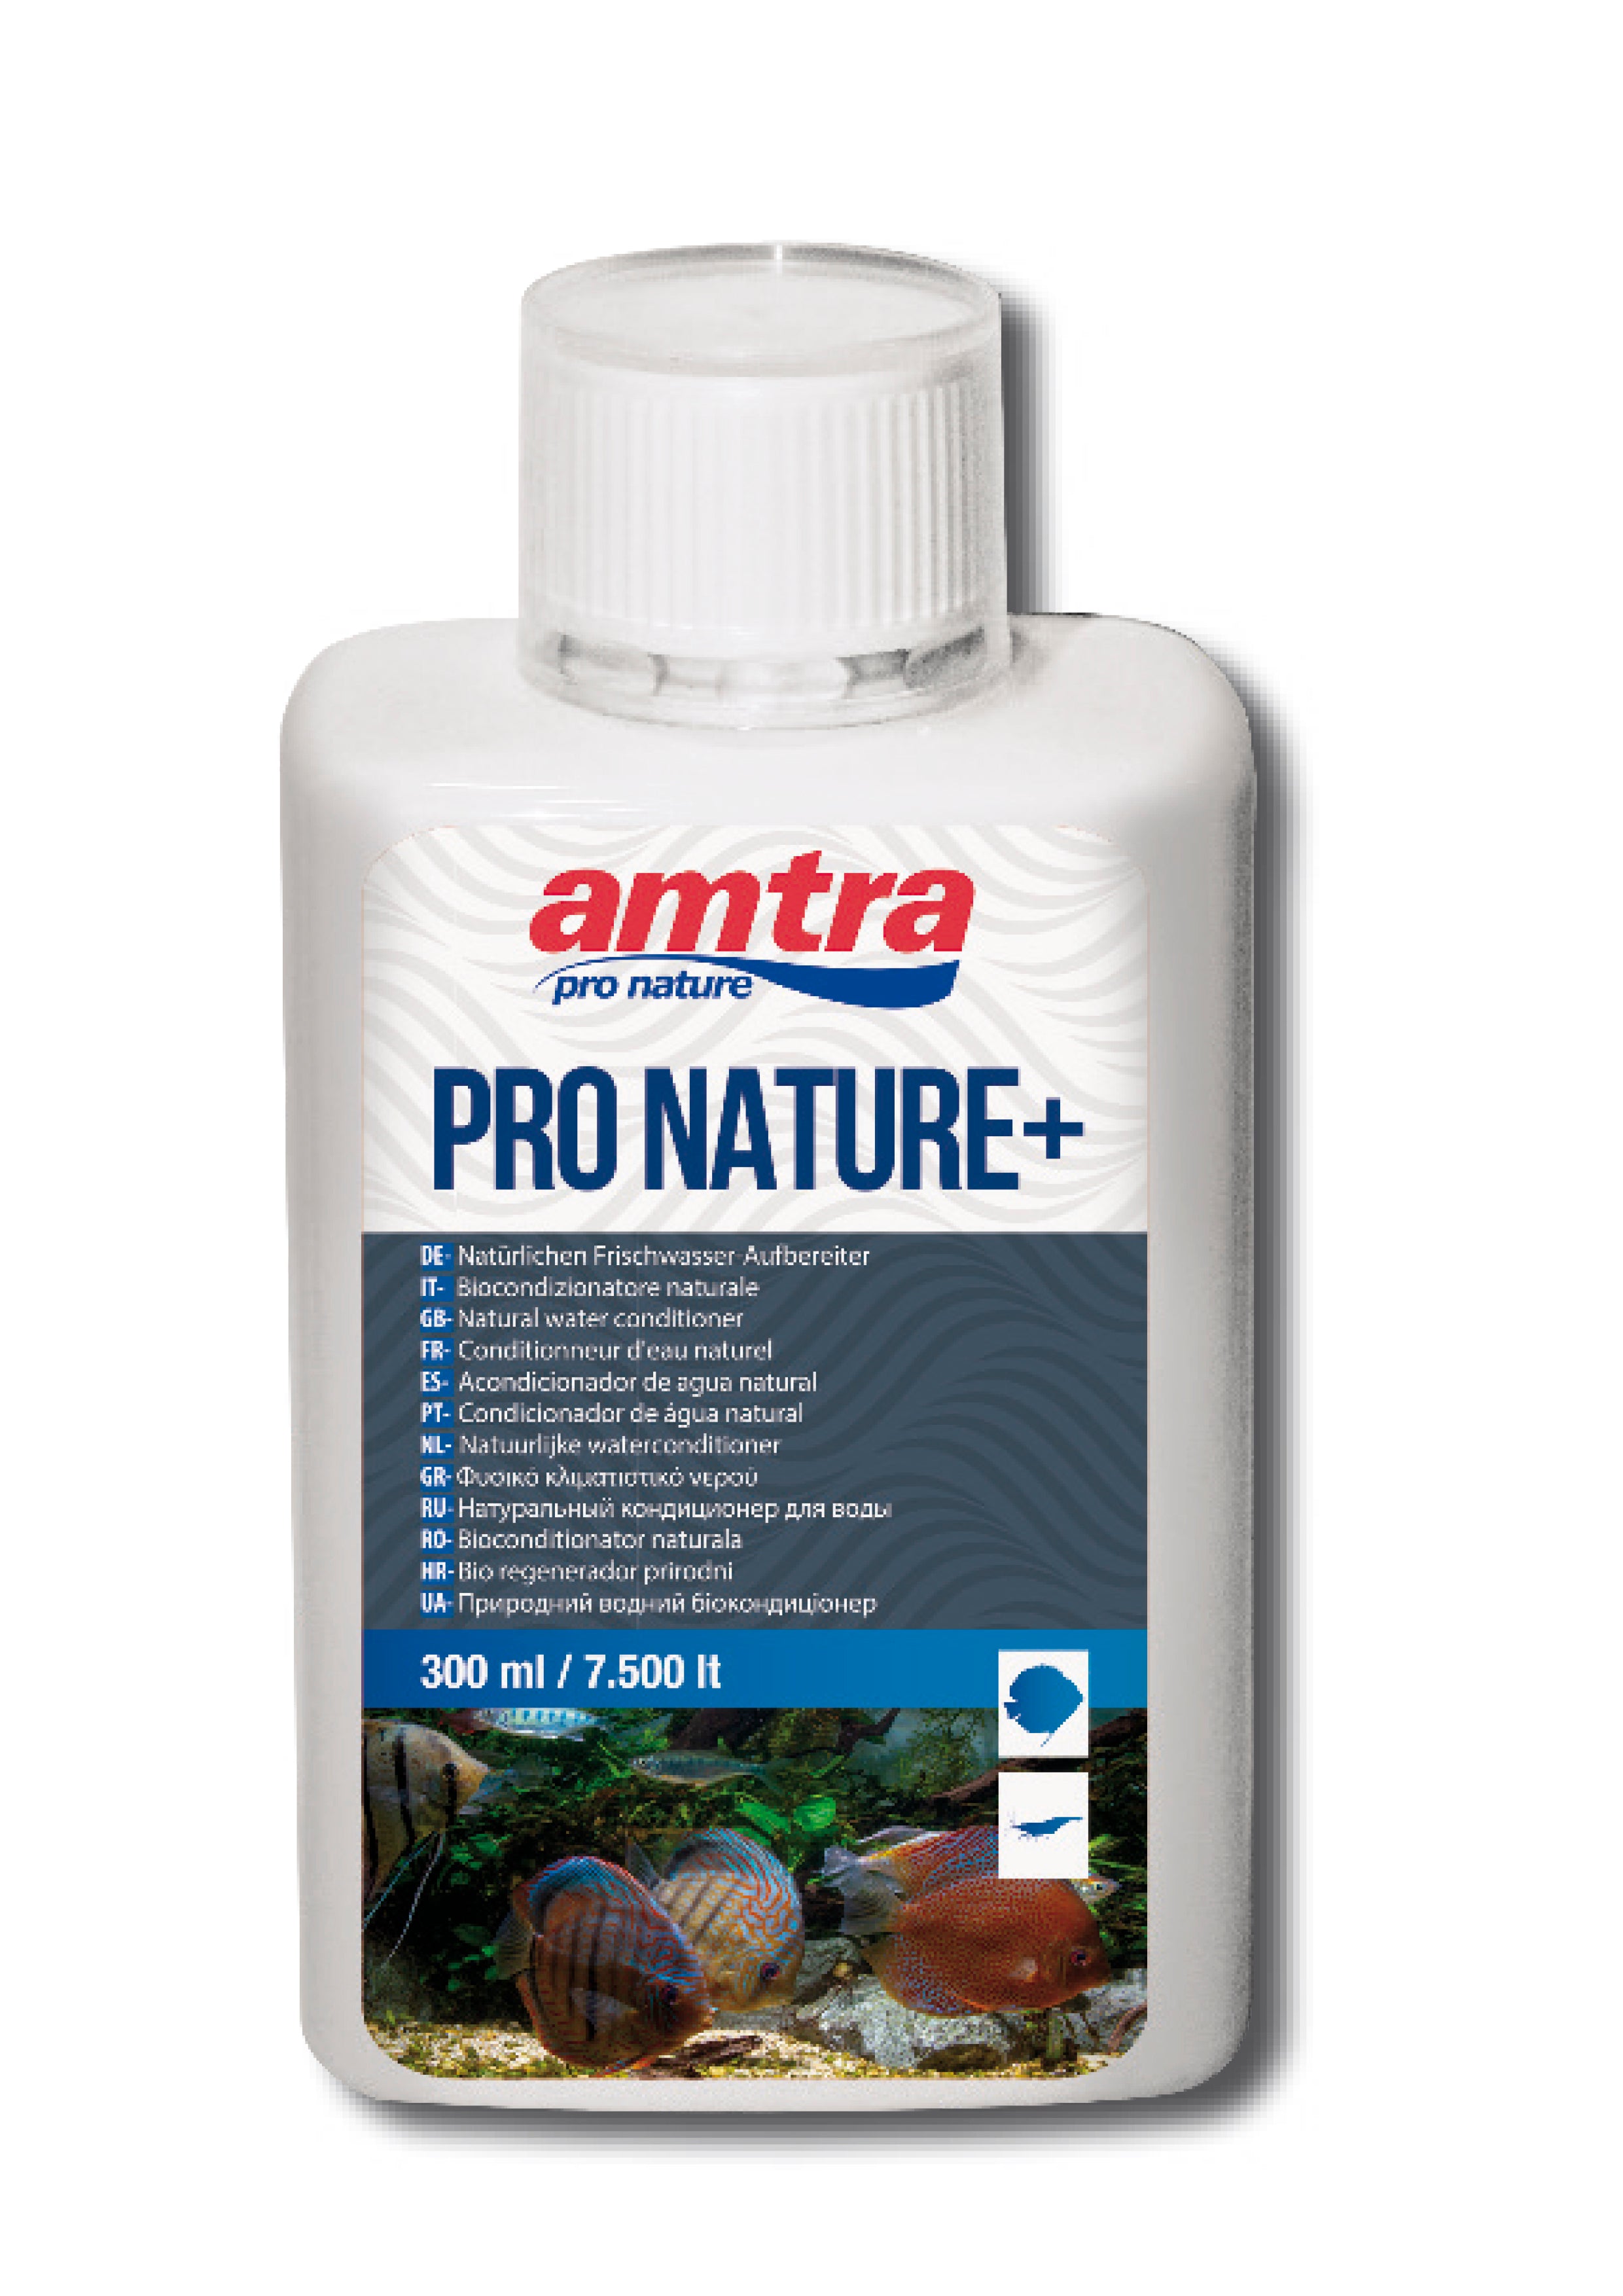 Amtra pro nature+ - natürlicher Wasseraufbereiter